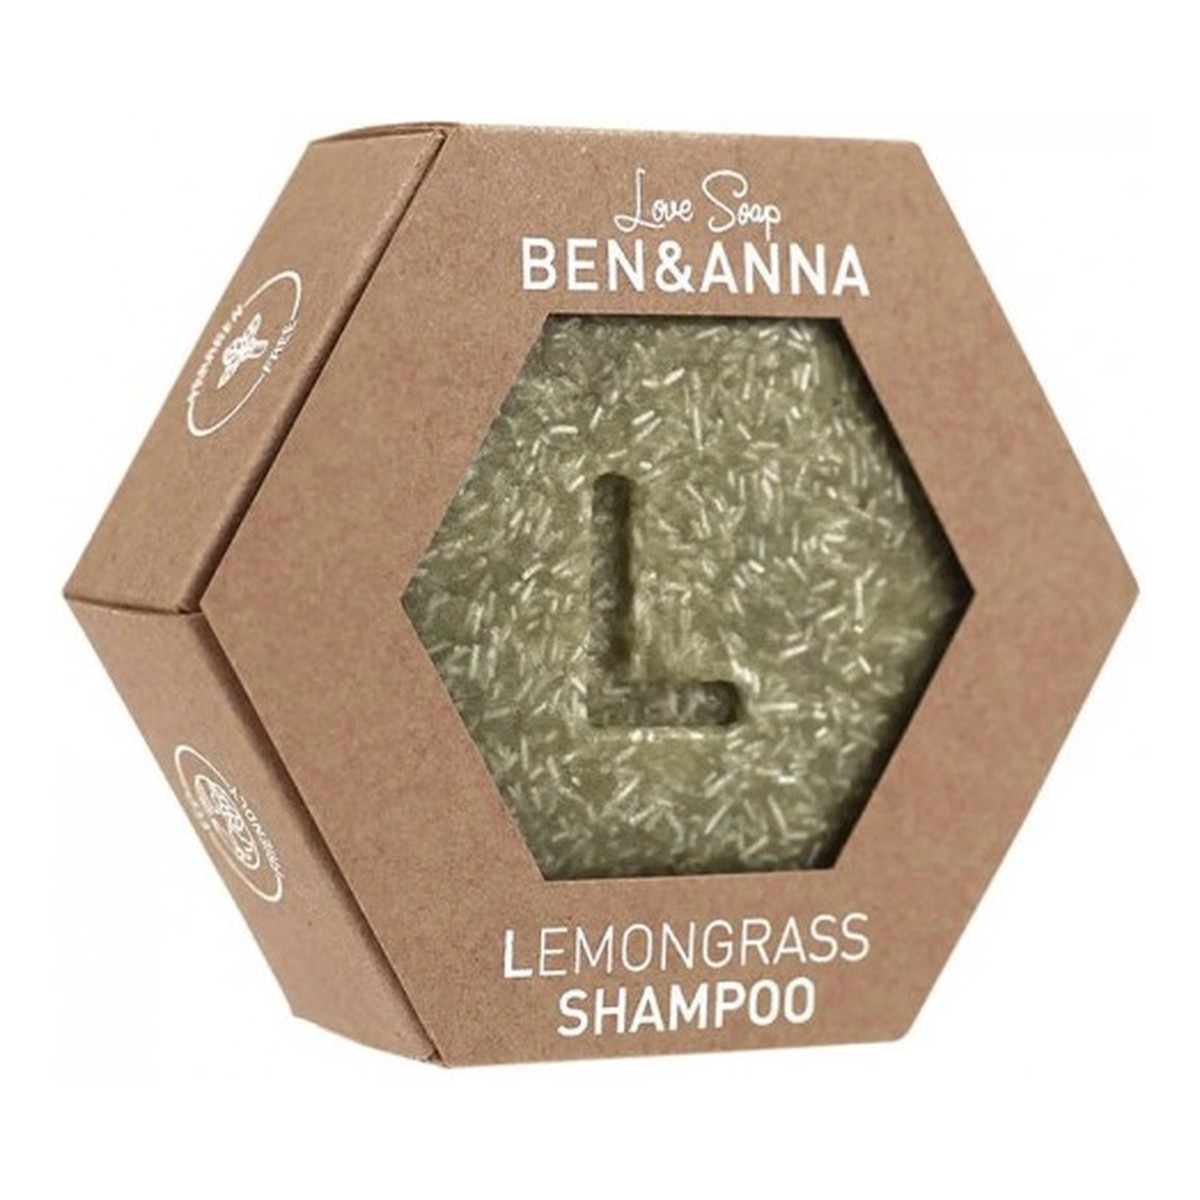 Ben&Anna Shampoo szampon do włosów w kostce lemongrass 60g